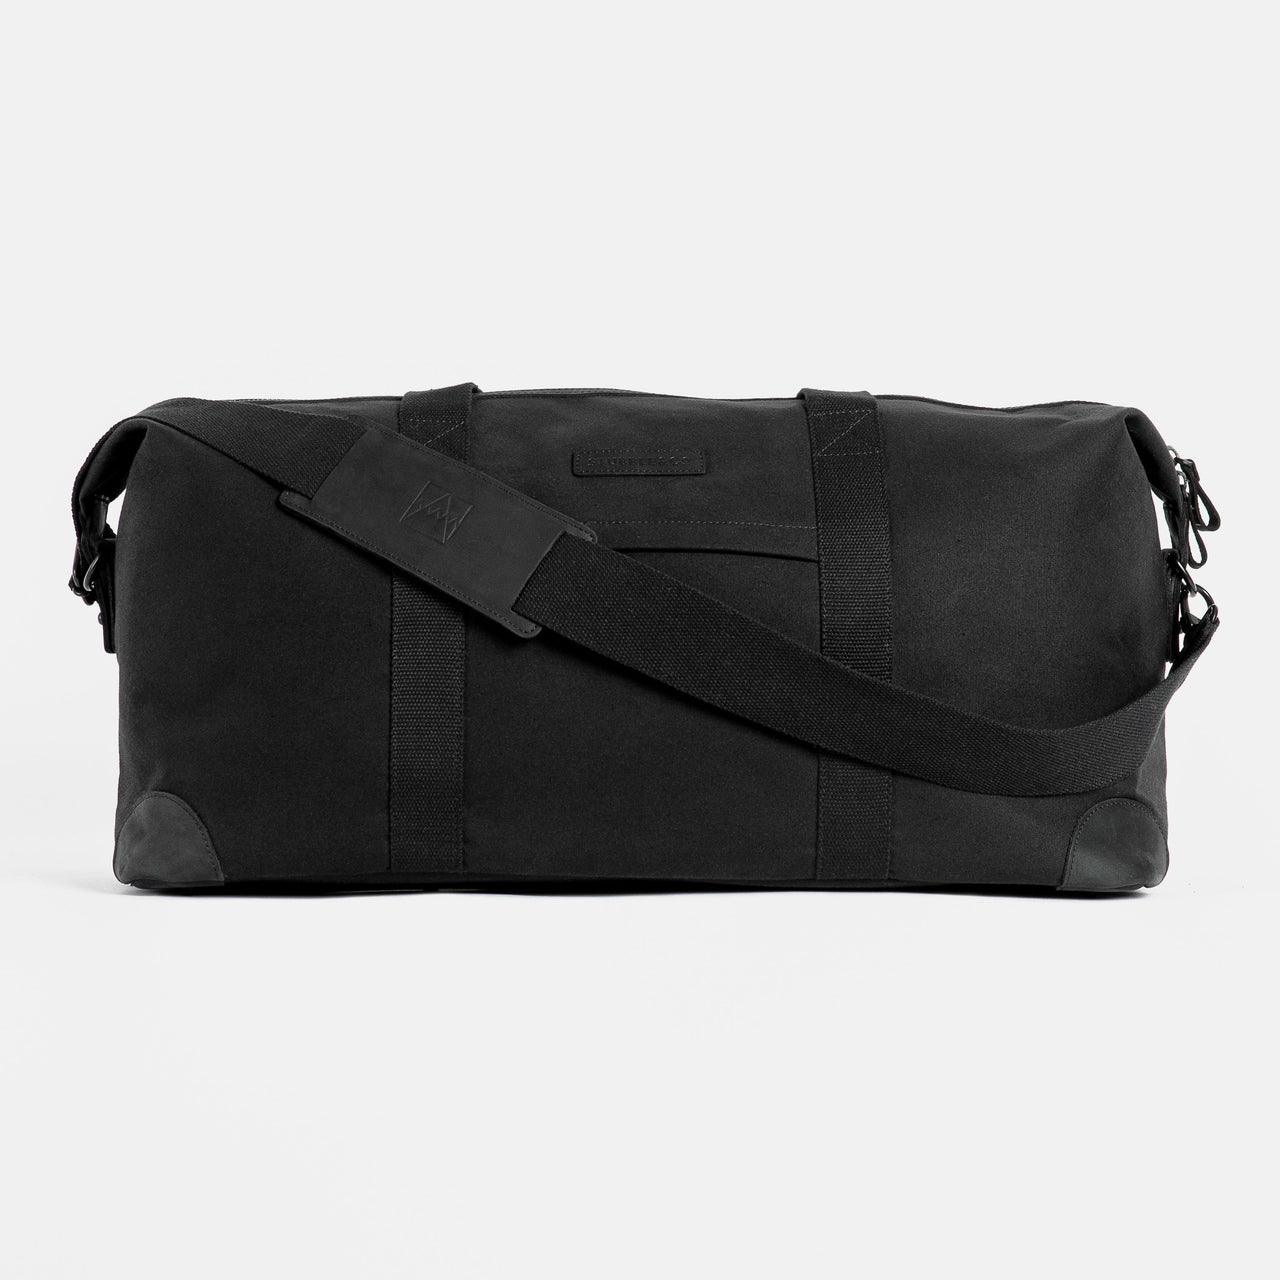 The Weekender Duffle Bag in All Black